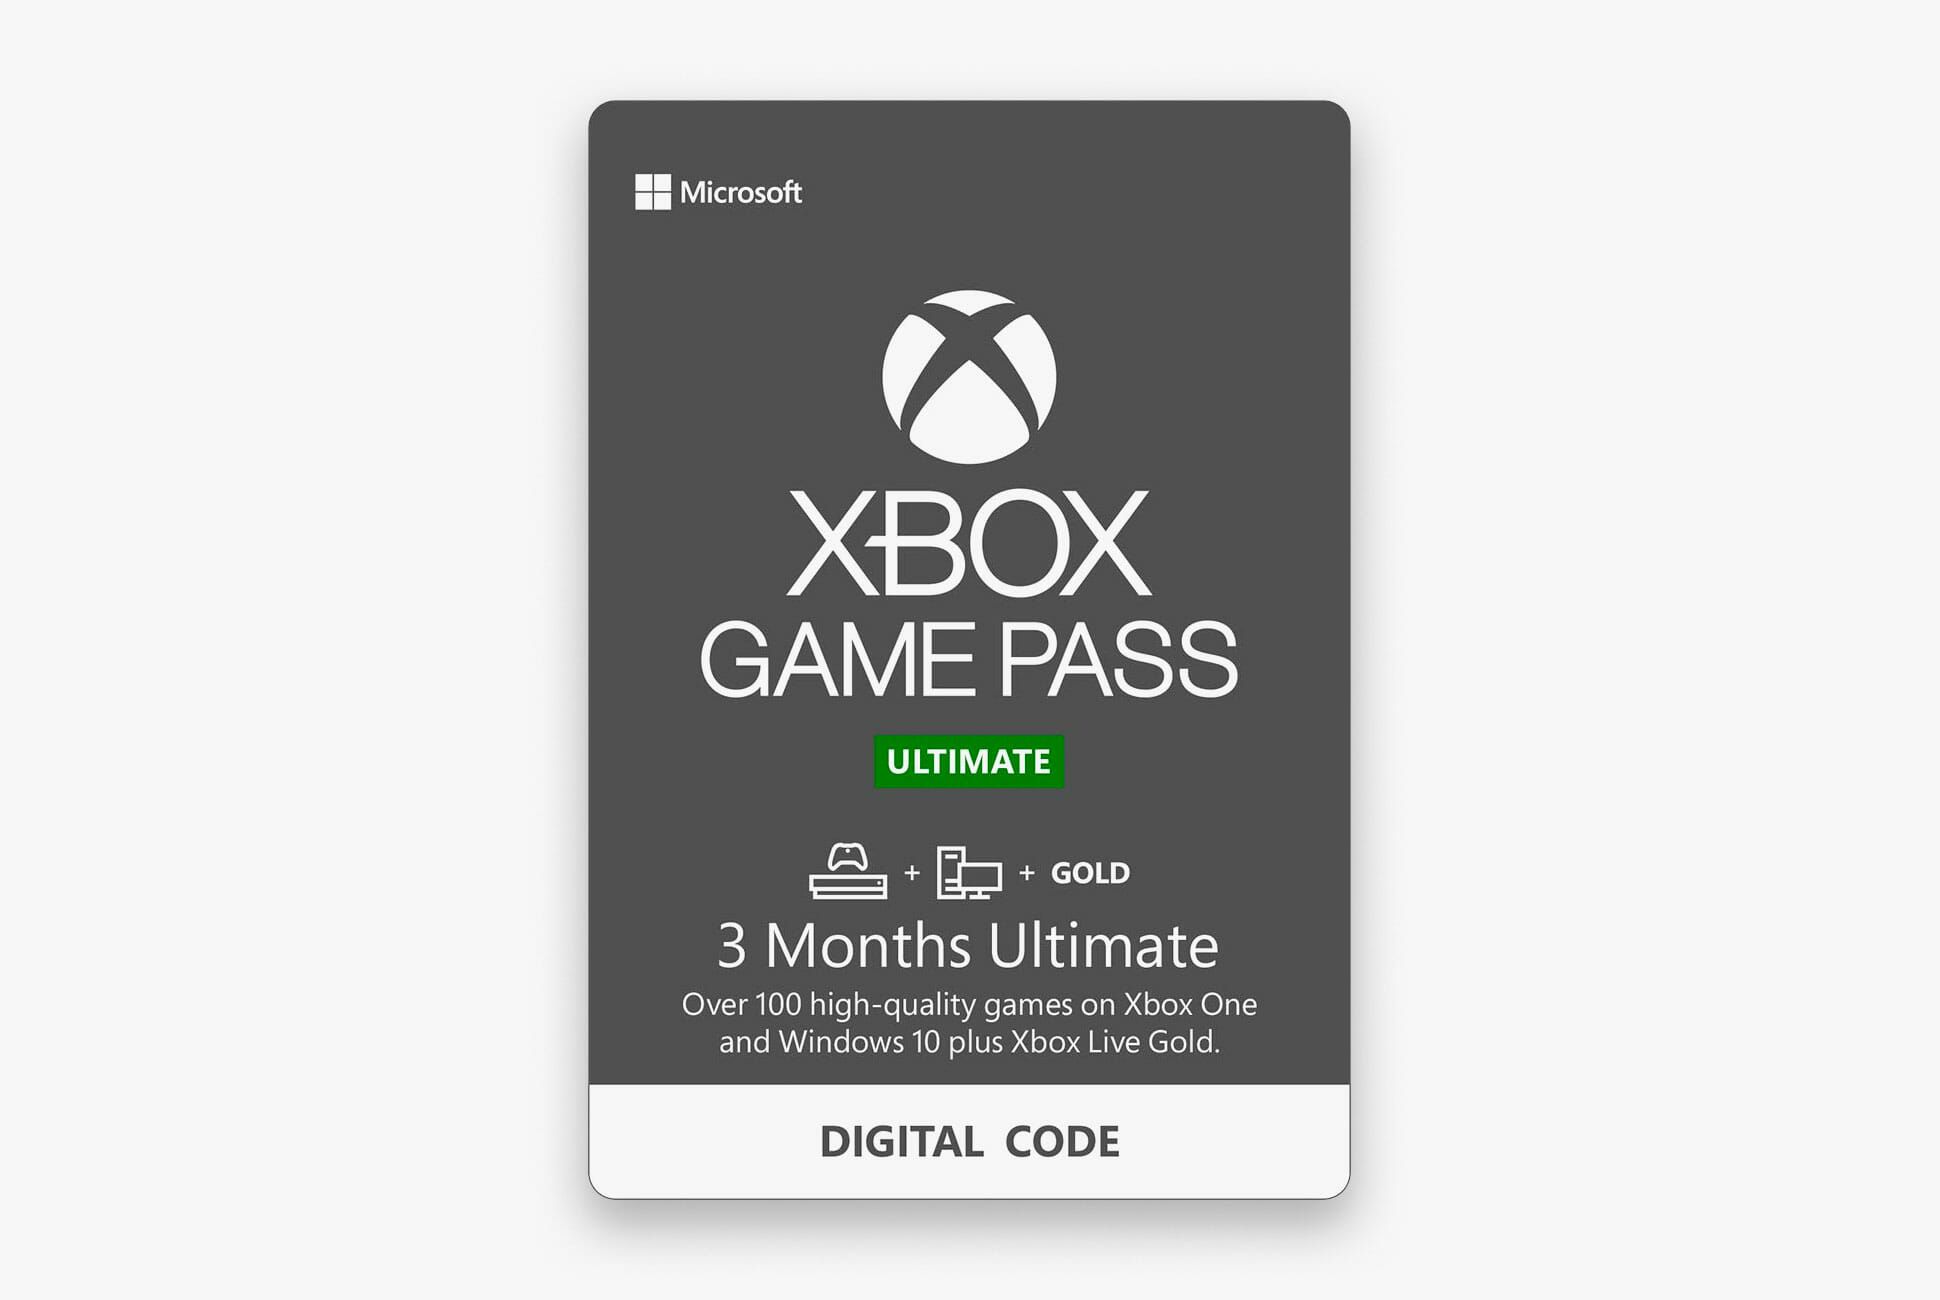 xbox buy game pass